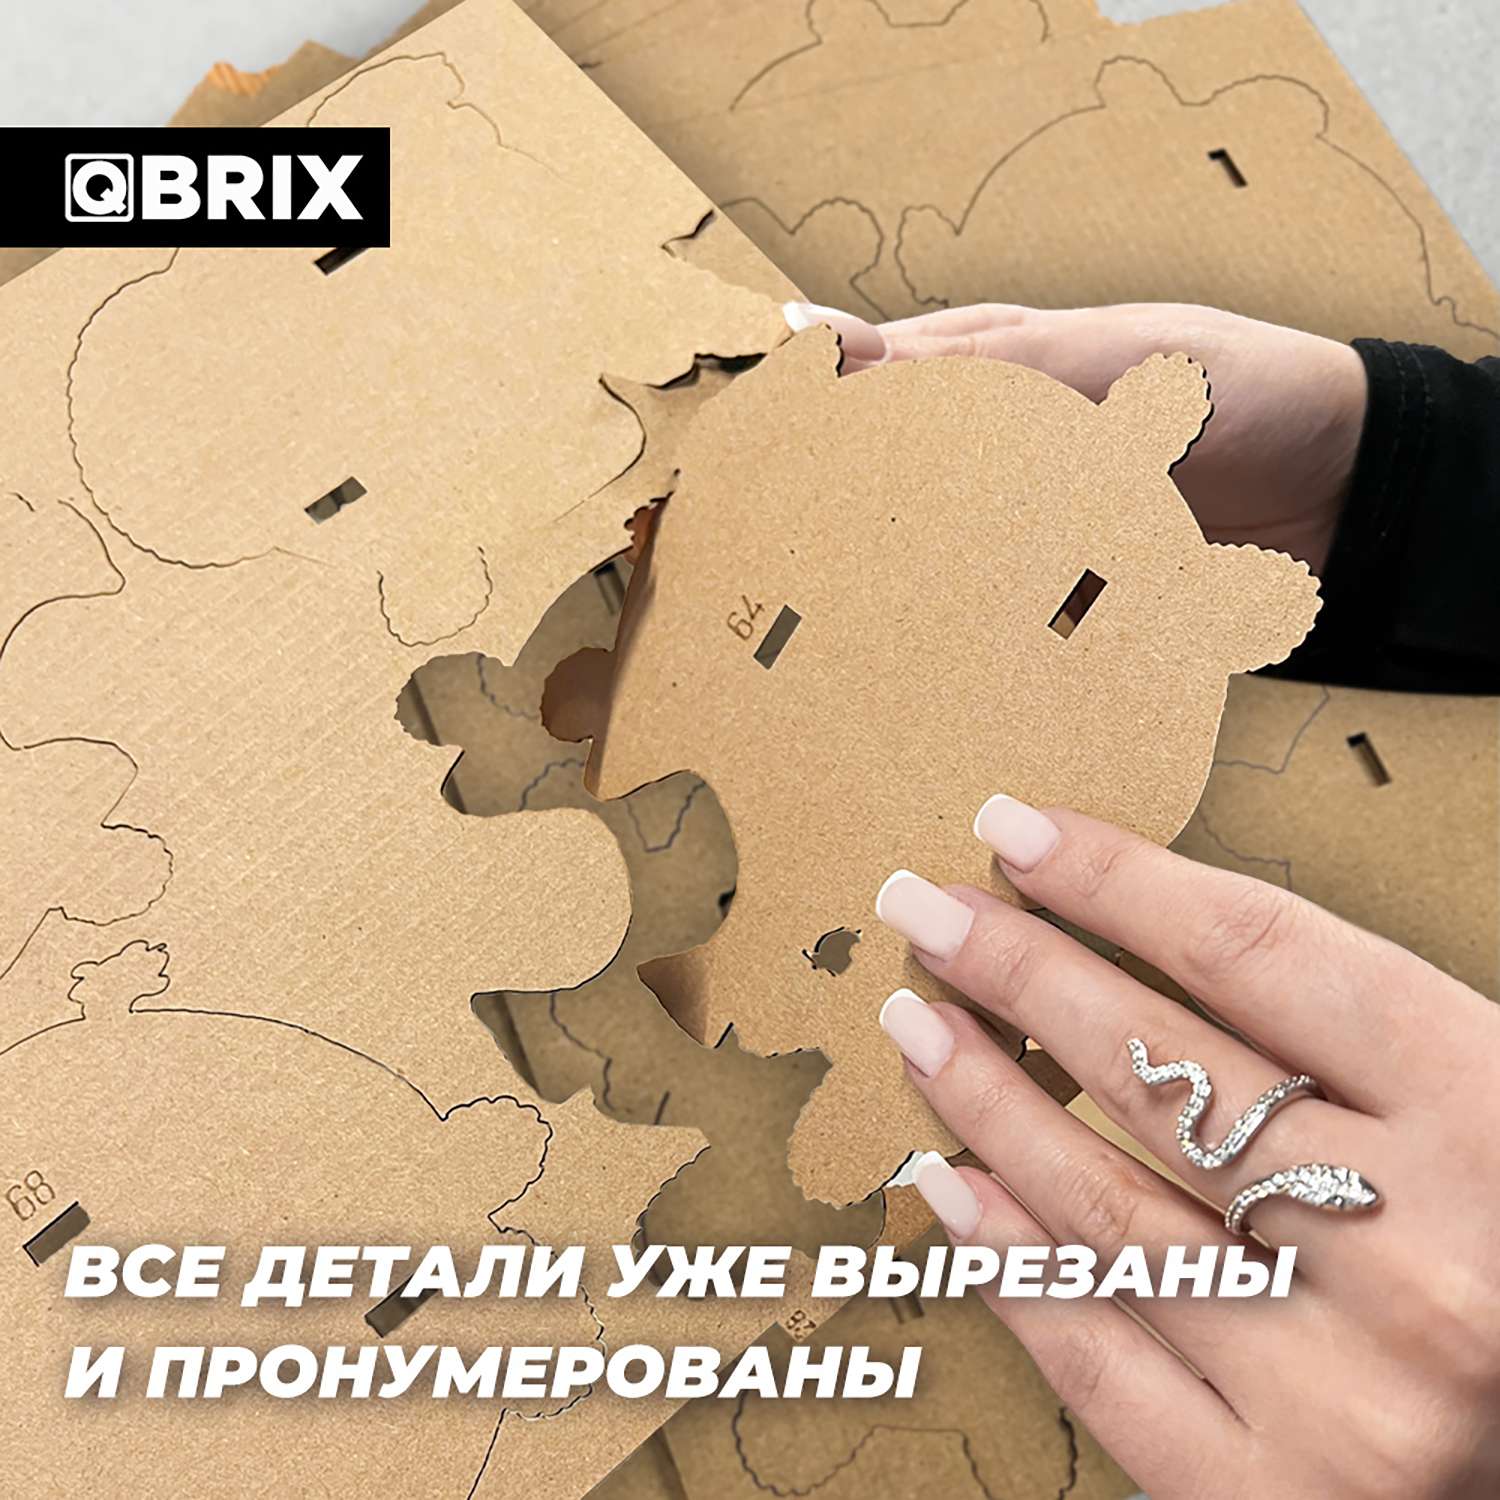 Конструктор QBRIX 3D картонный Одиссея 20020 20020 - фото 7